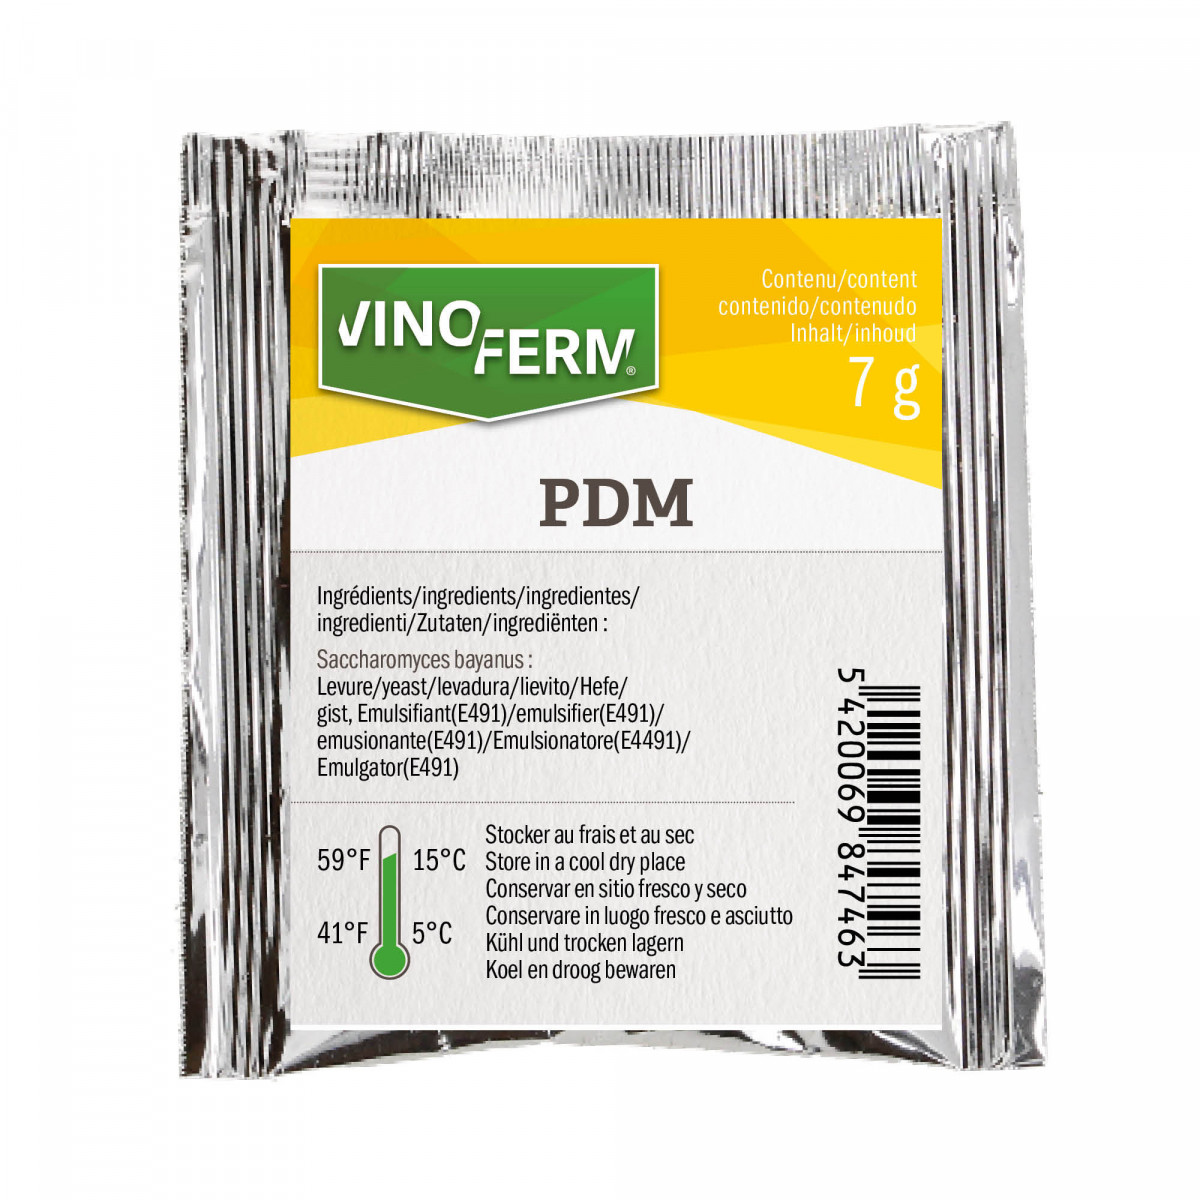 Dried wine yeast Vinoferm  PDM 7 g